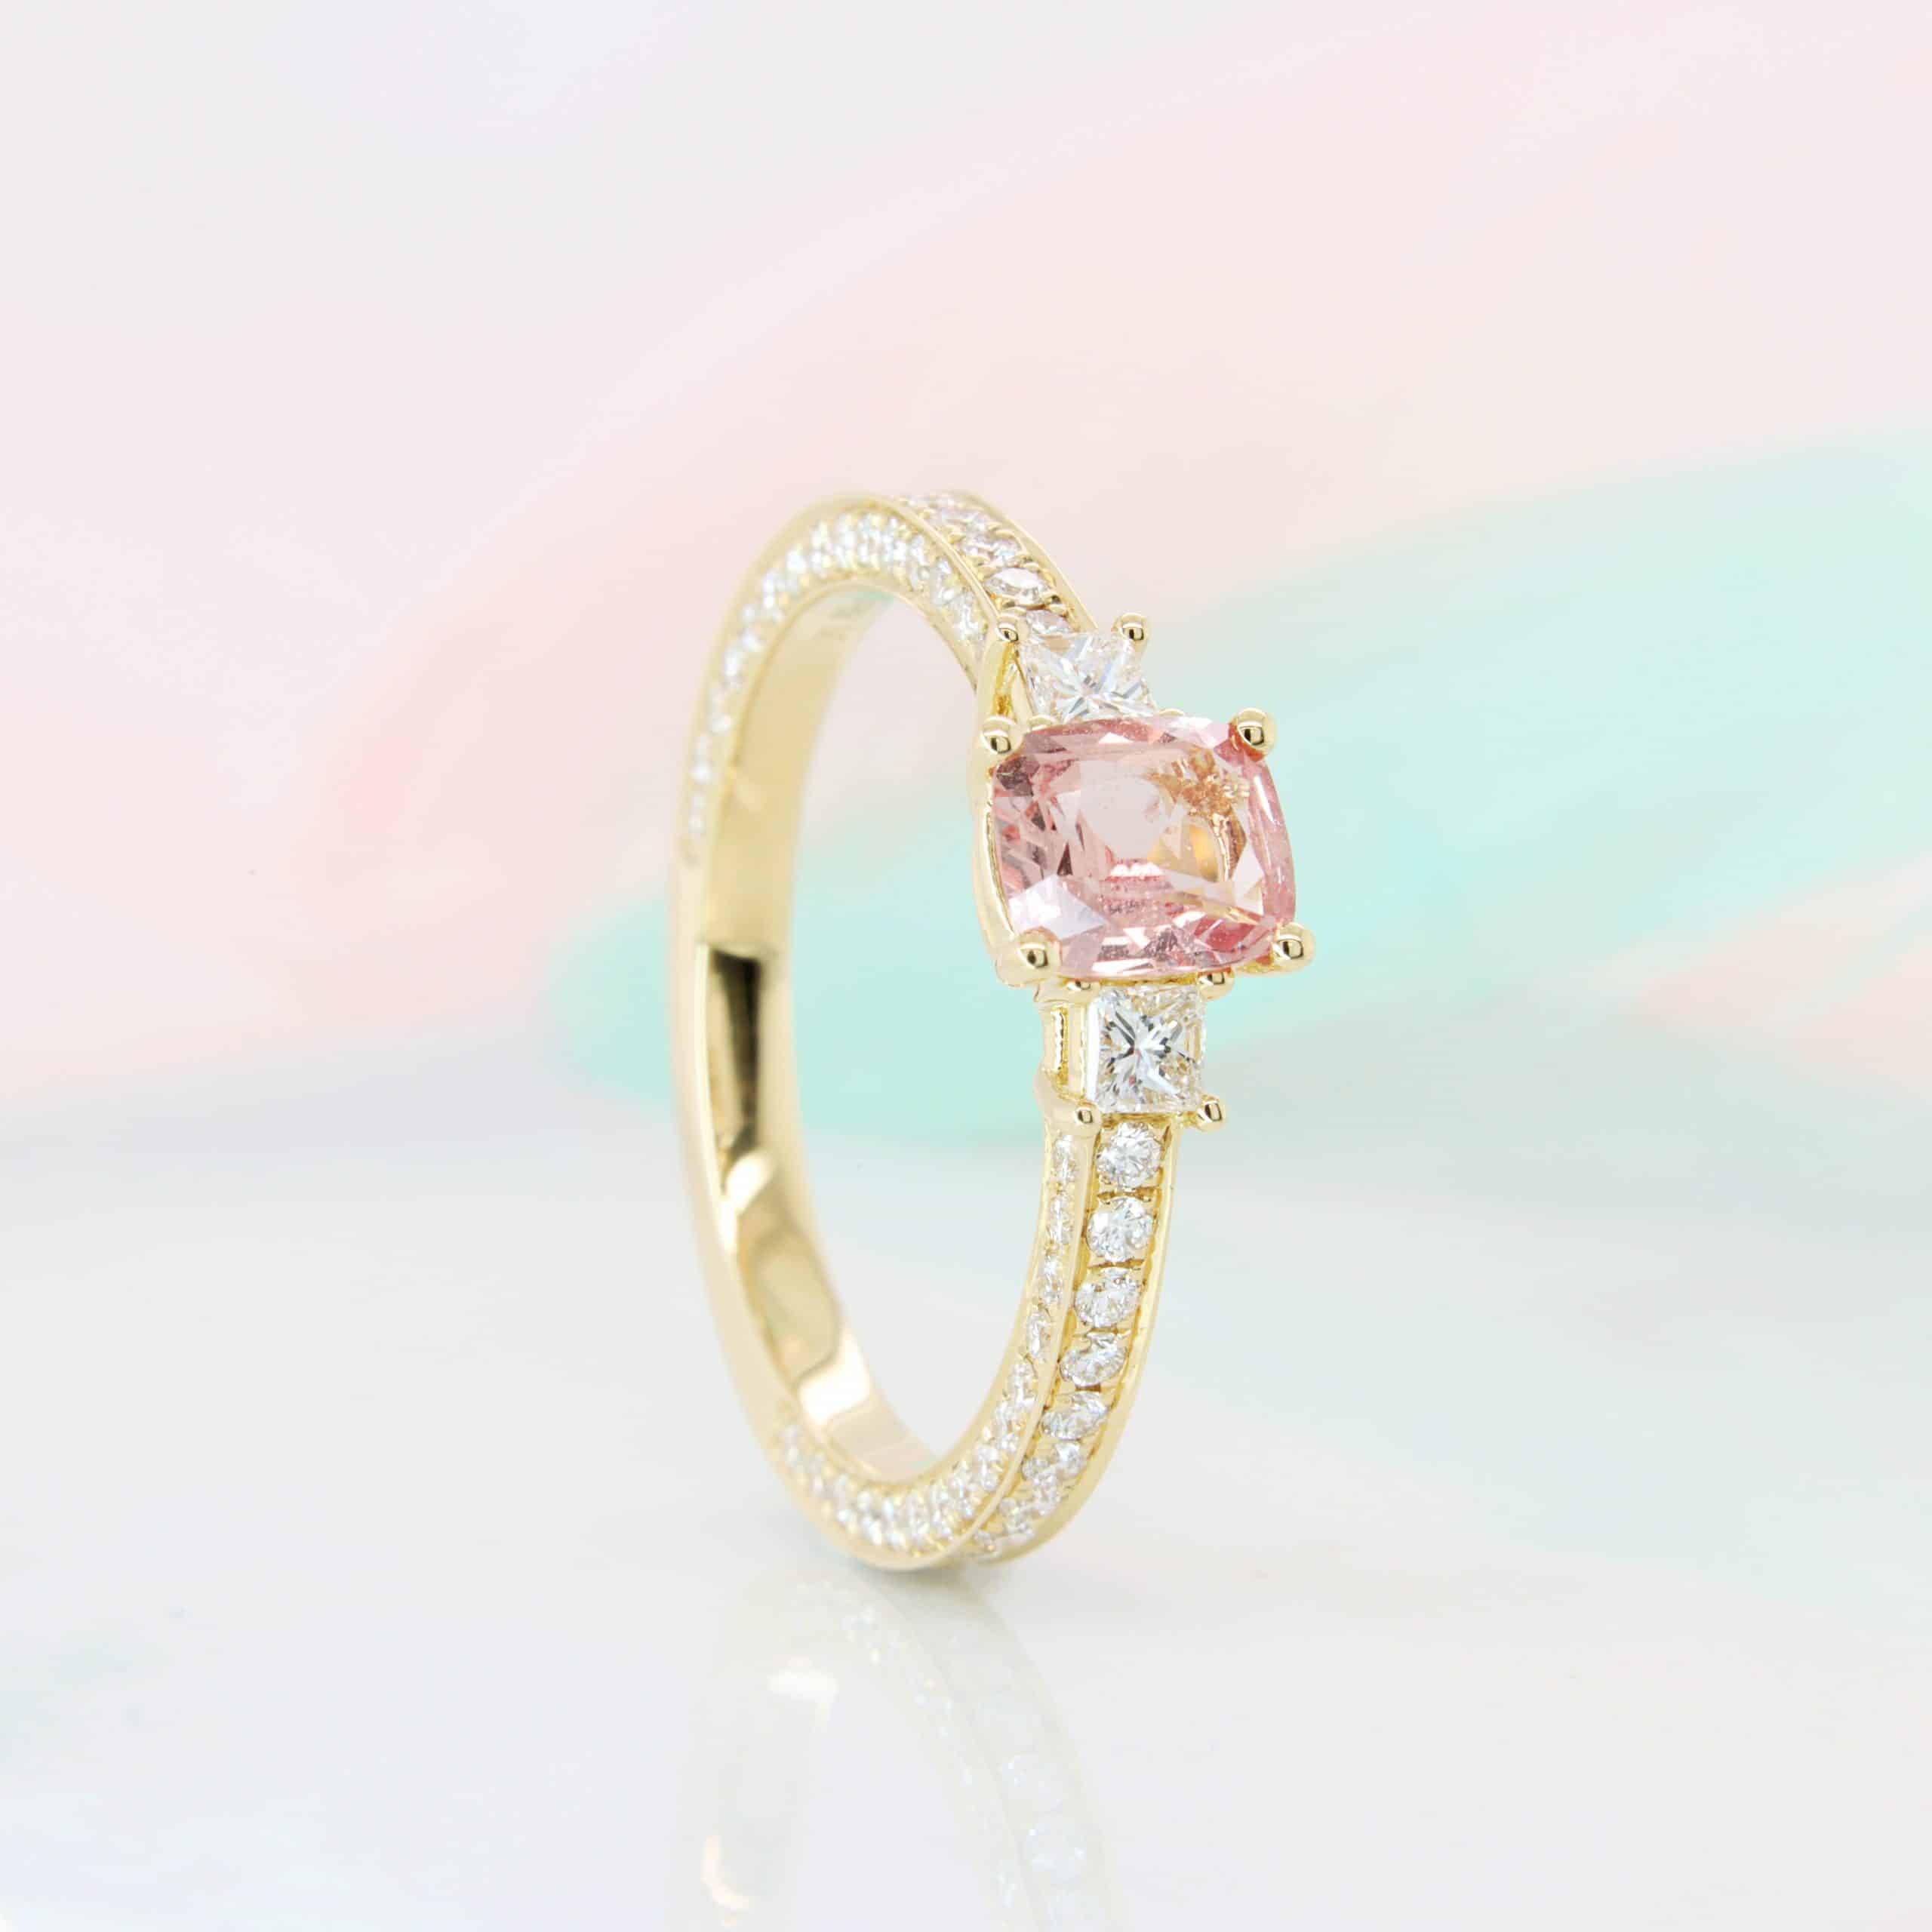 Padparadscha Sapphire with Princess Cut Diamond Multi-pave diamond Ring